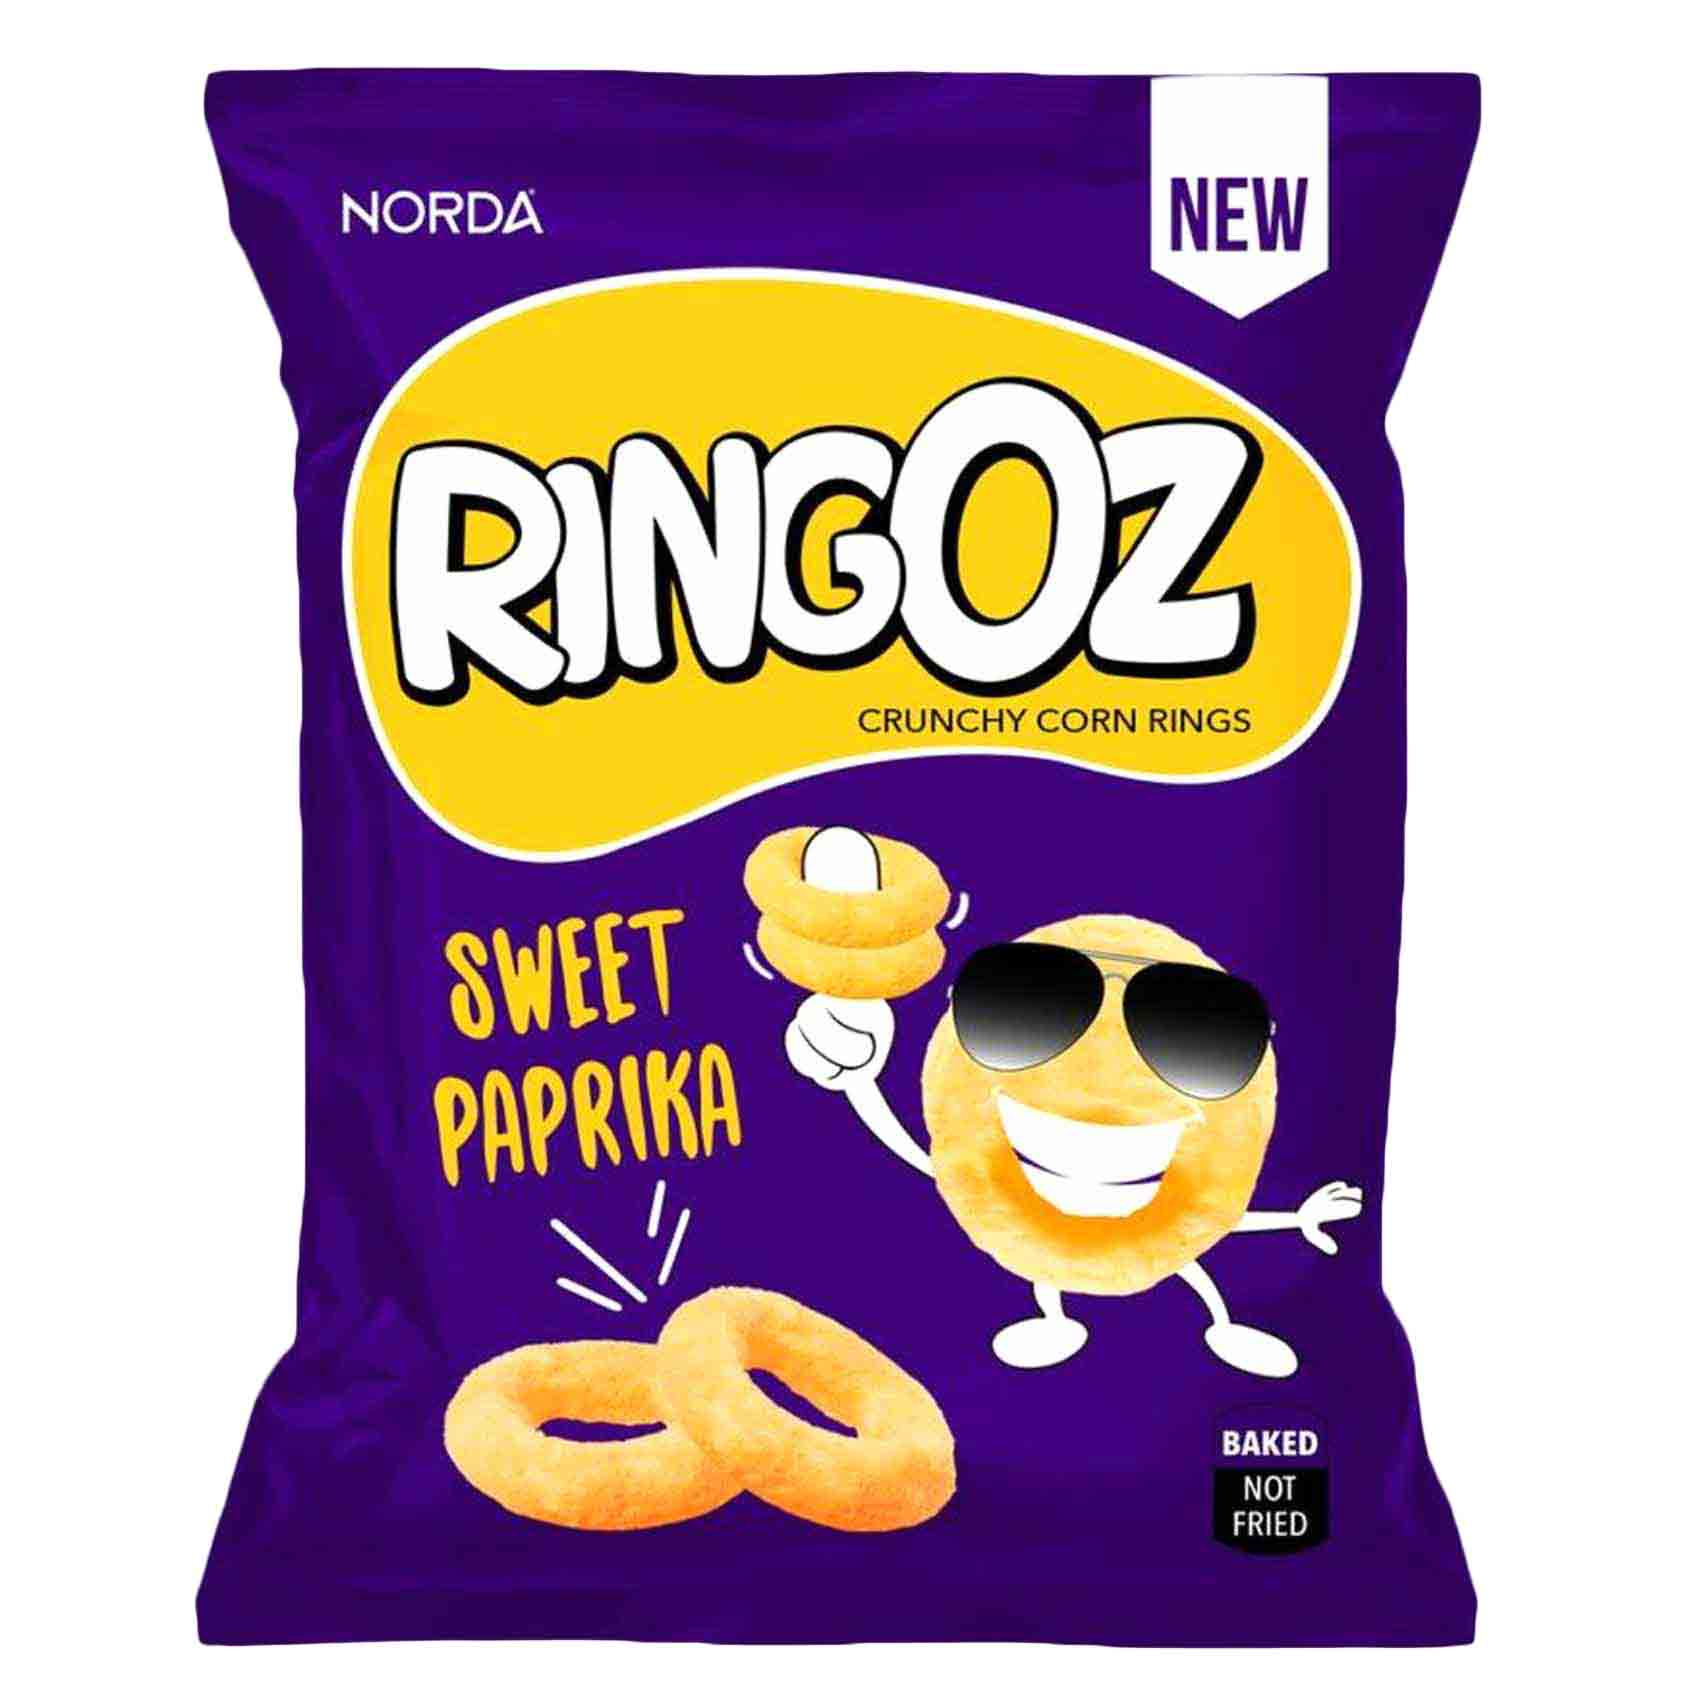 Norda Ringoz Sweet Paprika Crunchy Corn Rings 80g